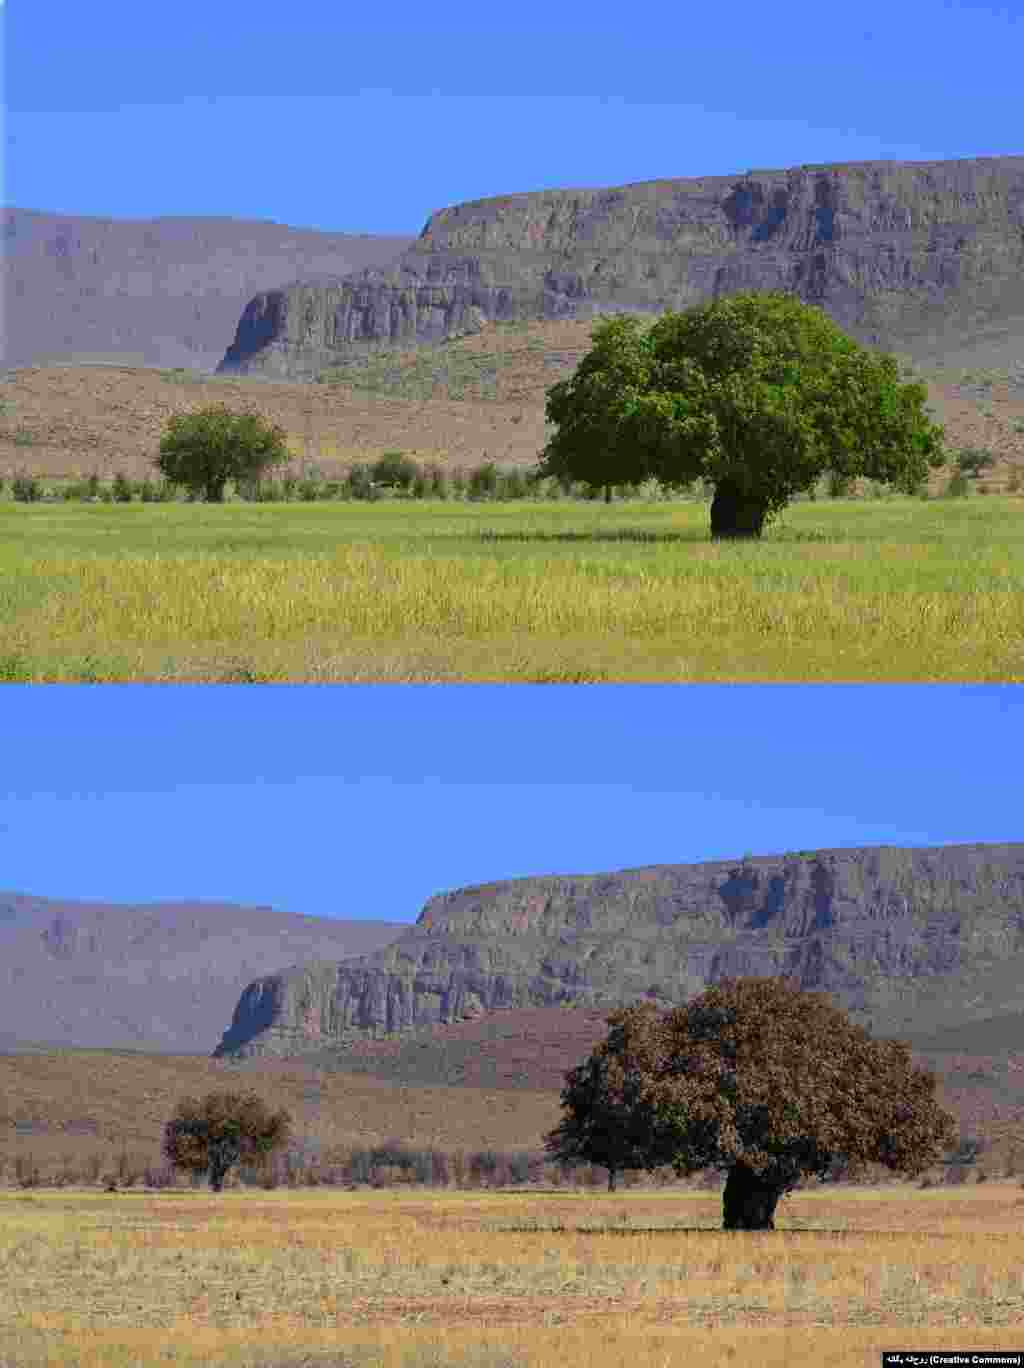 نام این درخت &laquo;بنه&raquo; یا پسته کوهی&zwnj;ست.&nbsp;درخت بنه ۶۰۰ ساله&zwnj;ای در خراسان جنوبی در فهرست آثار طبیعی ملی ایران به ثبت رسیده&zwnj;است. این تصویر یک بنه را در تابستان و پاییز در نی&zwnj;ریز نشان می&zwnj;دهد.